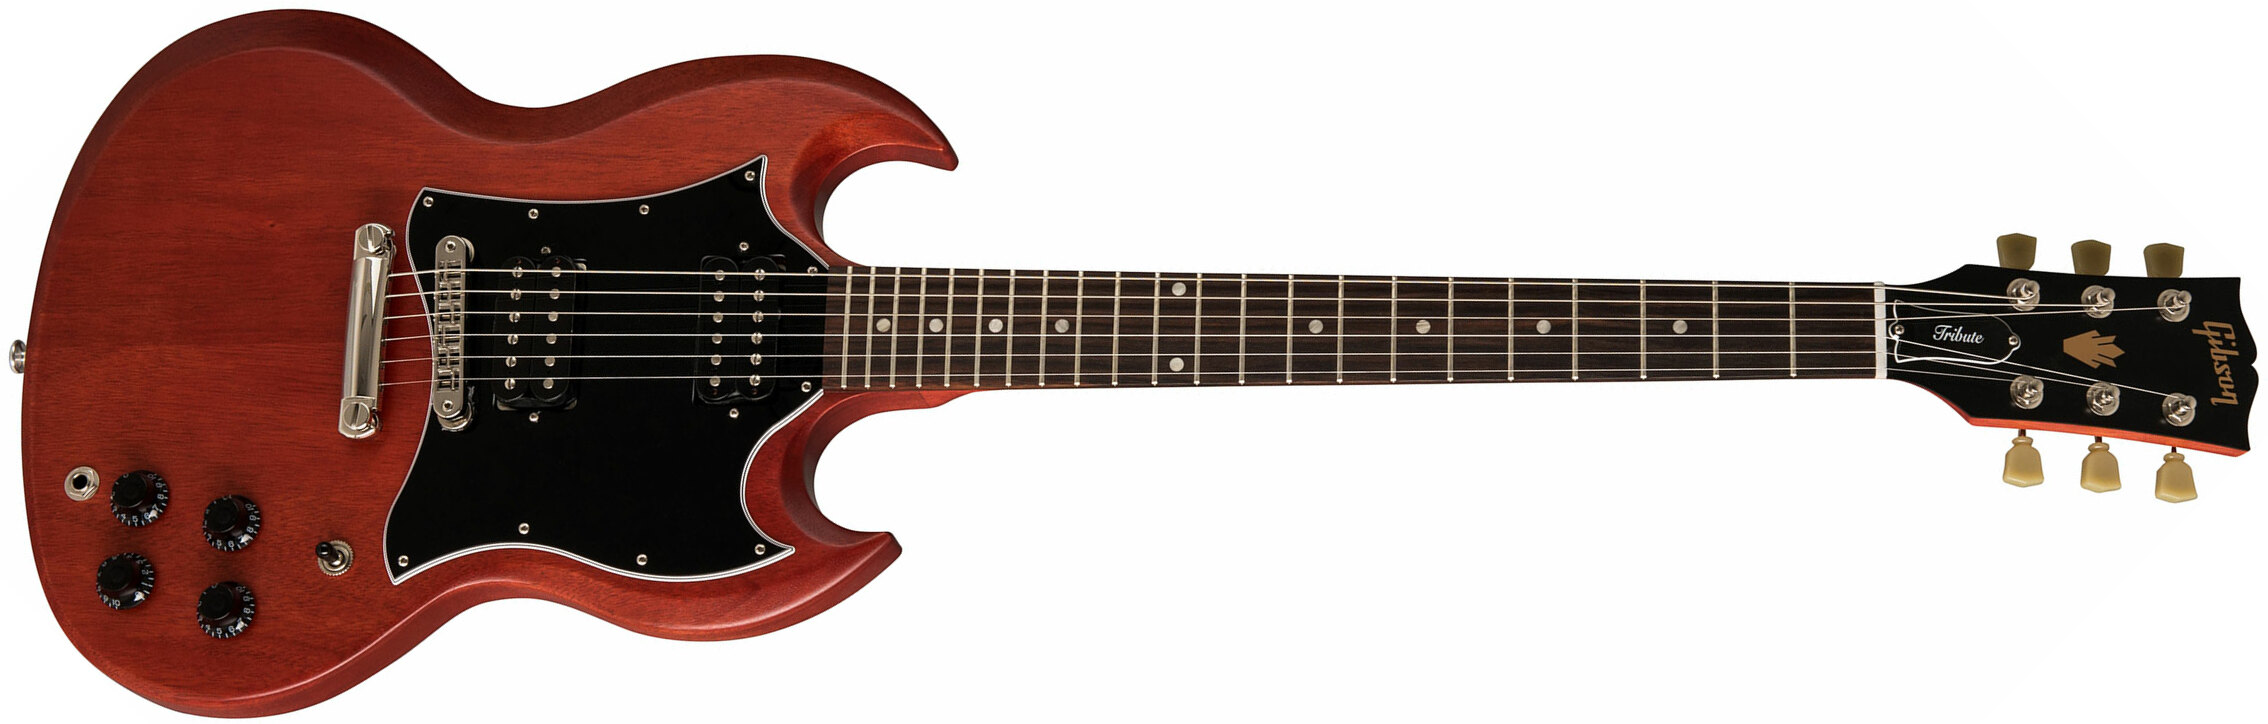 Gibson Sg Standard Tribute - Vintage Cherry Satin - Guitarra eléctrica de doble corte. - Main picture